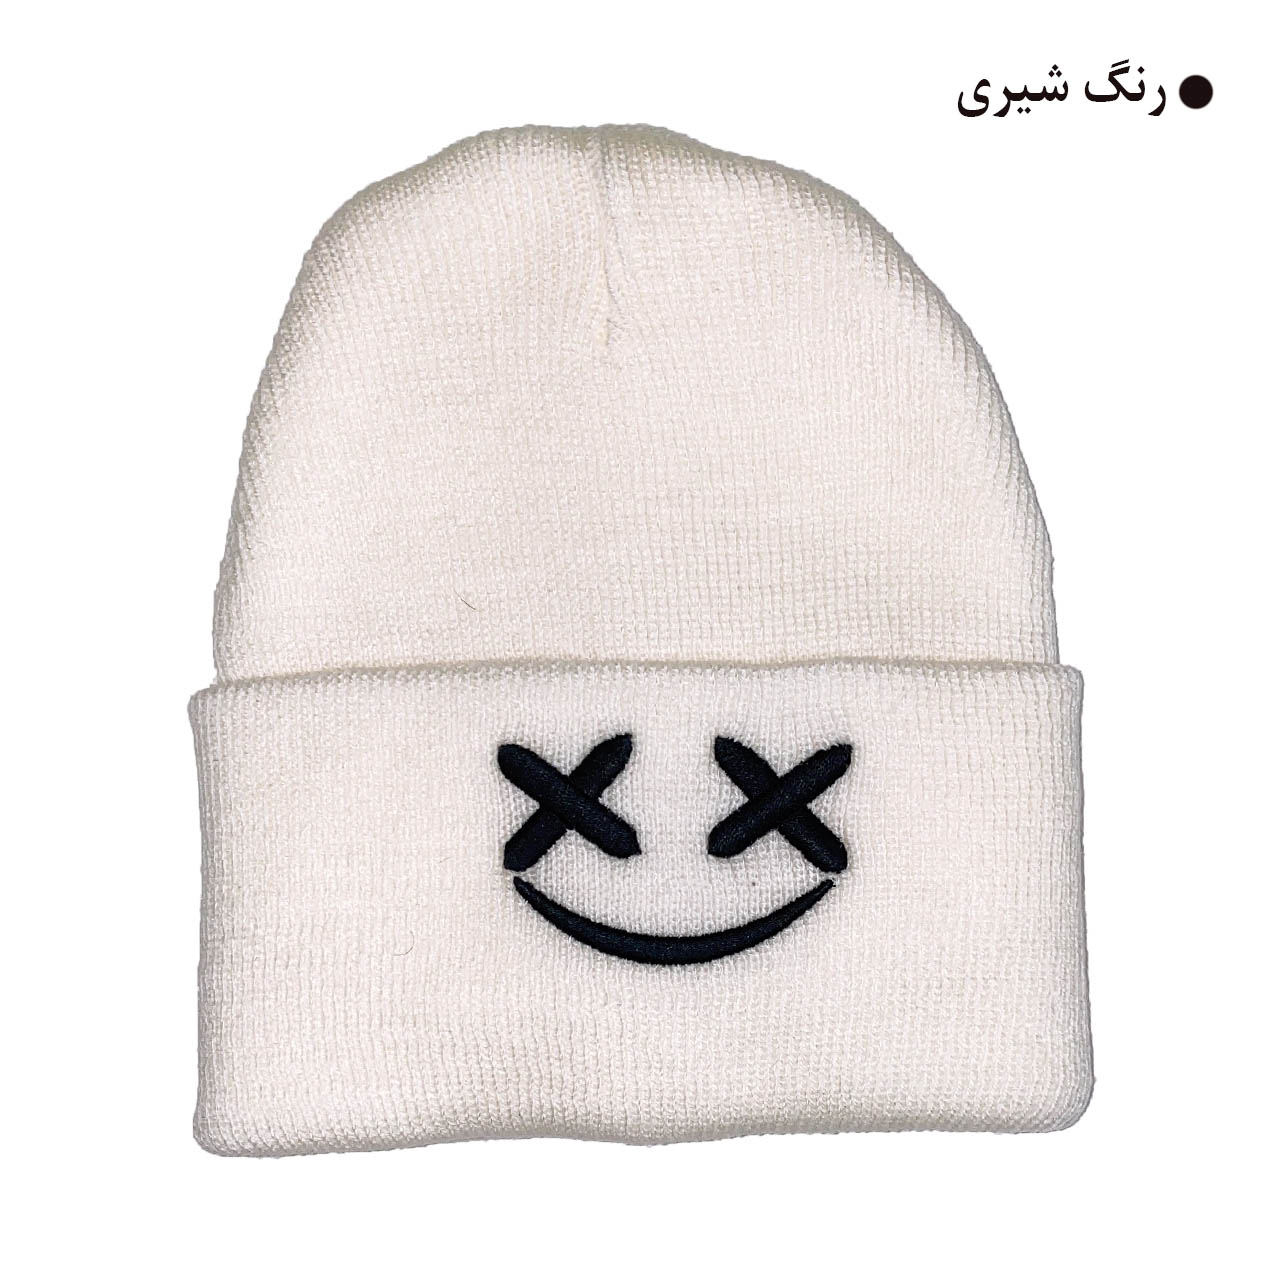 کلاه بافتنی مدل زمستانی طرح لبخند کد 121 -  - 6